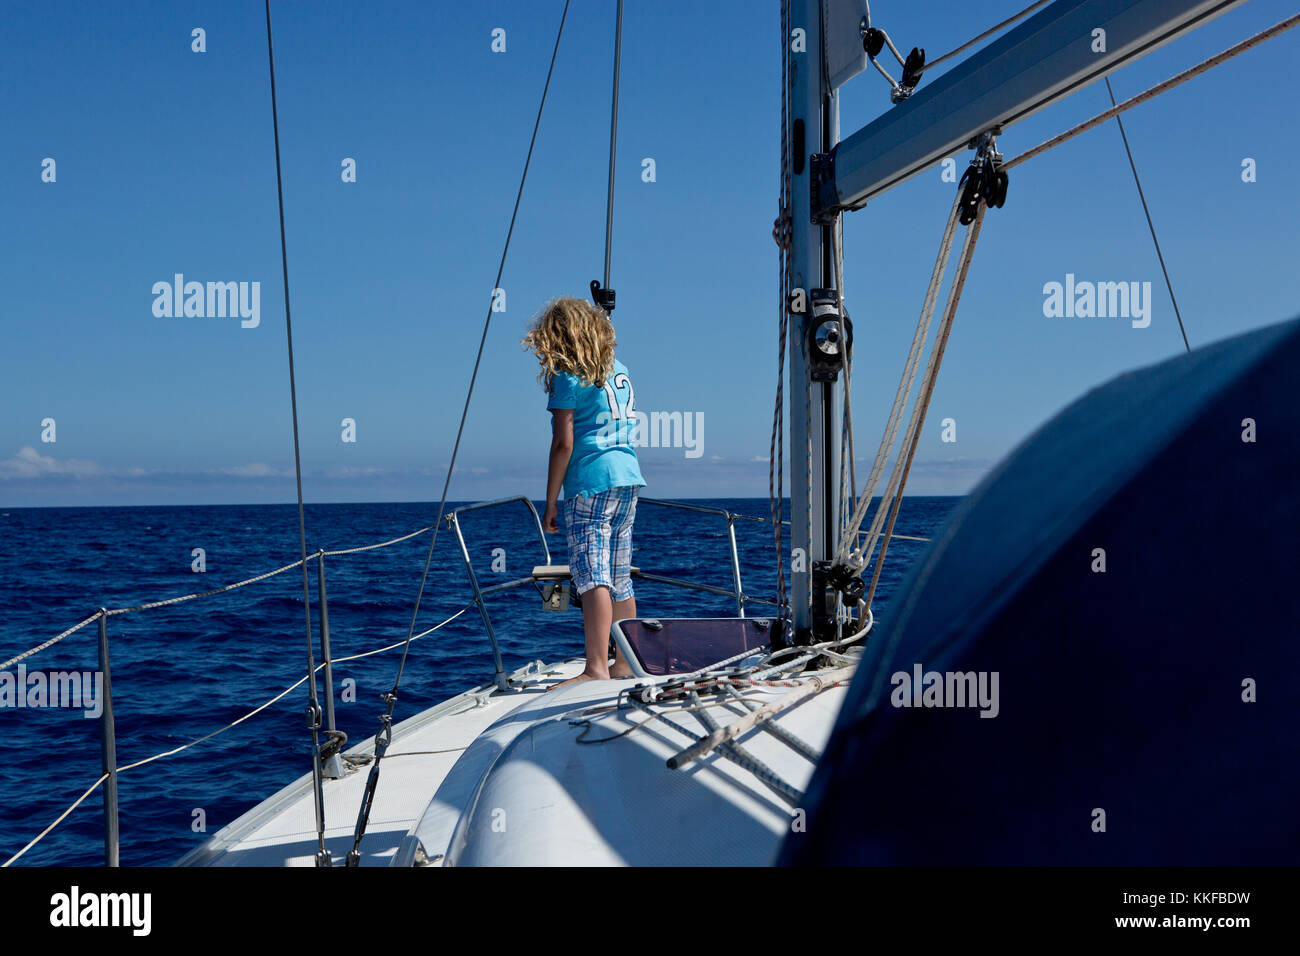 Sailing at the atlantic sea Stock Photo